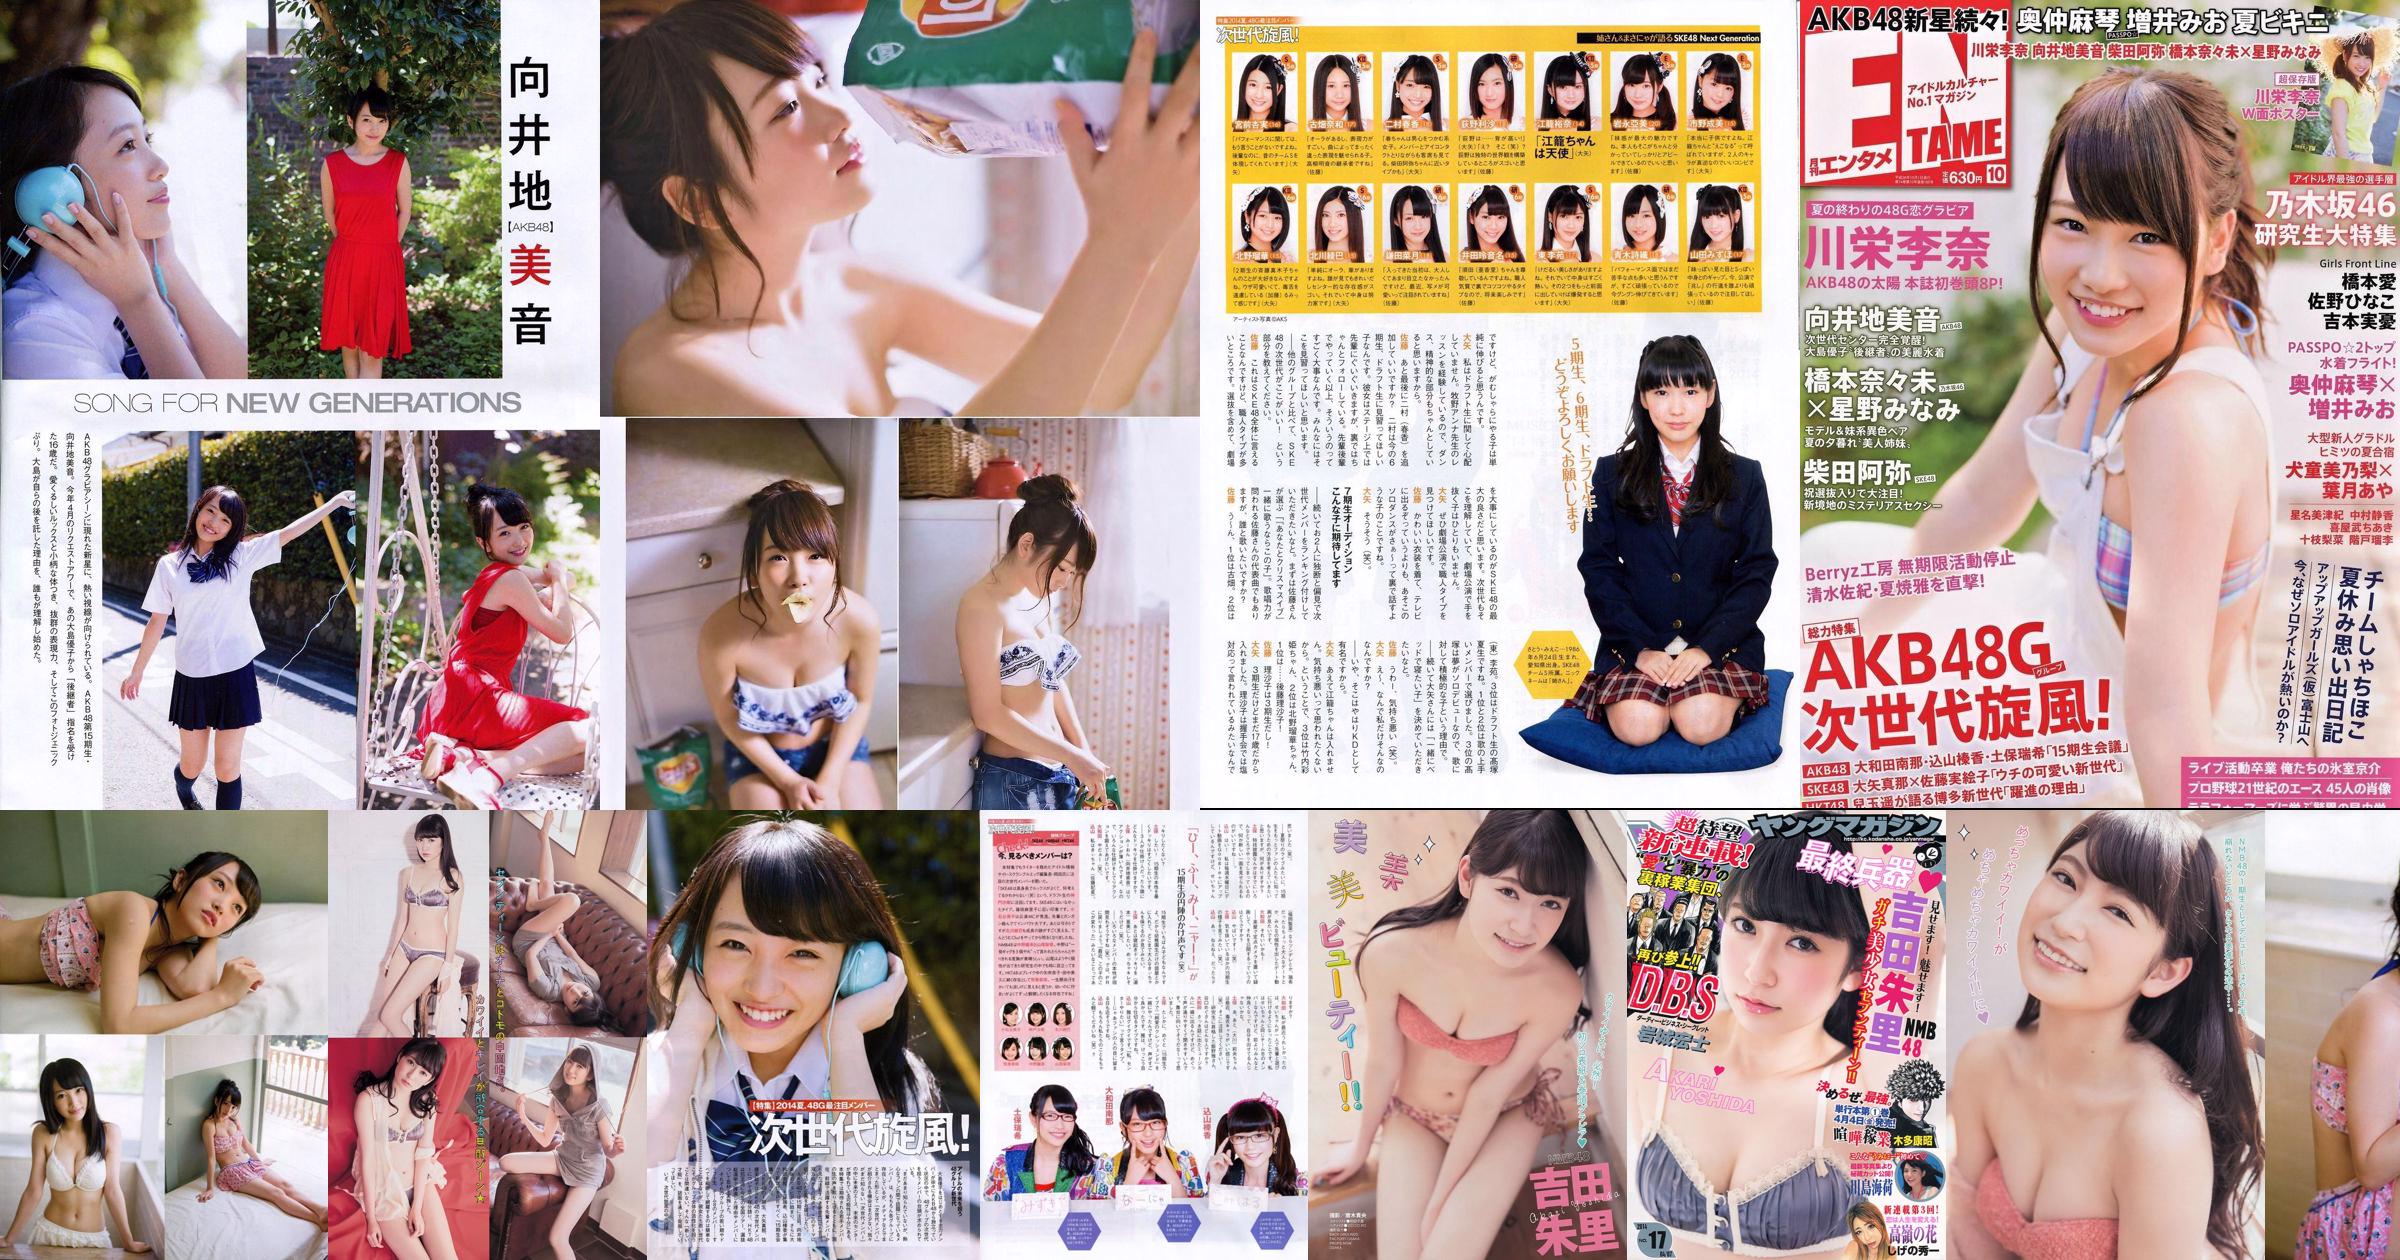 [Young Magazine] Akari Yoshida Umika Kawashima 2014 No.17 Photograph No.0f4f6a Page 1